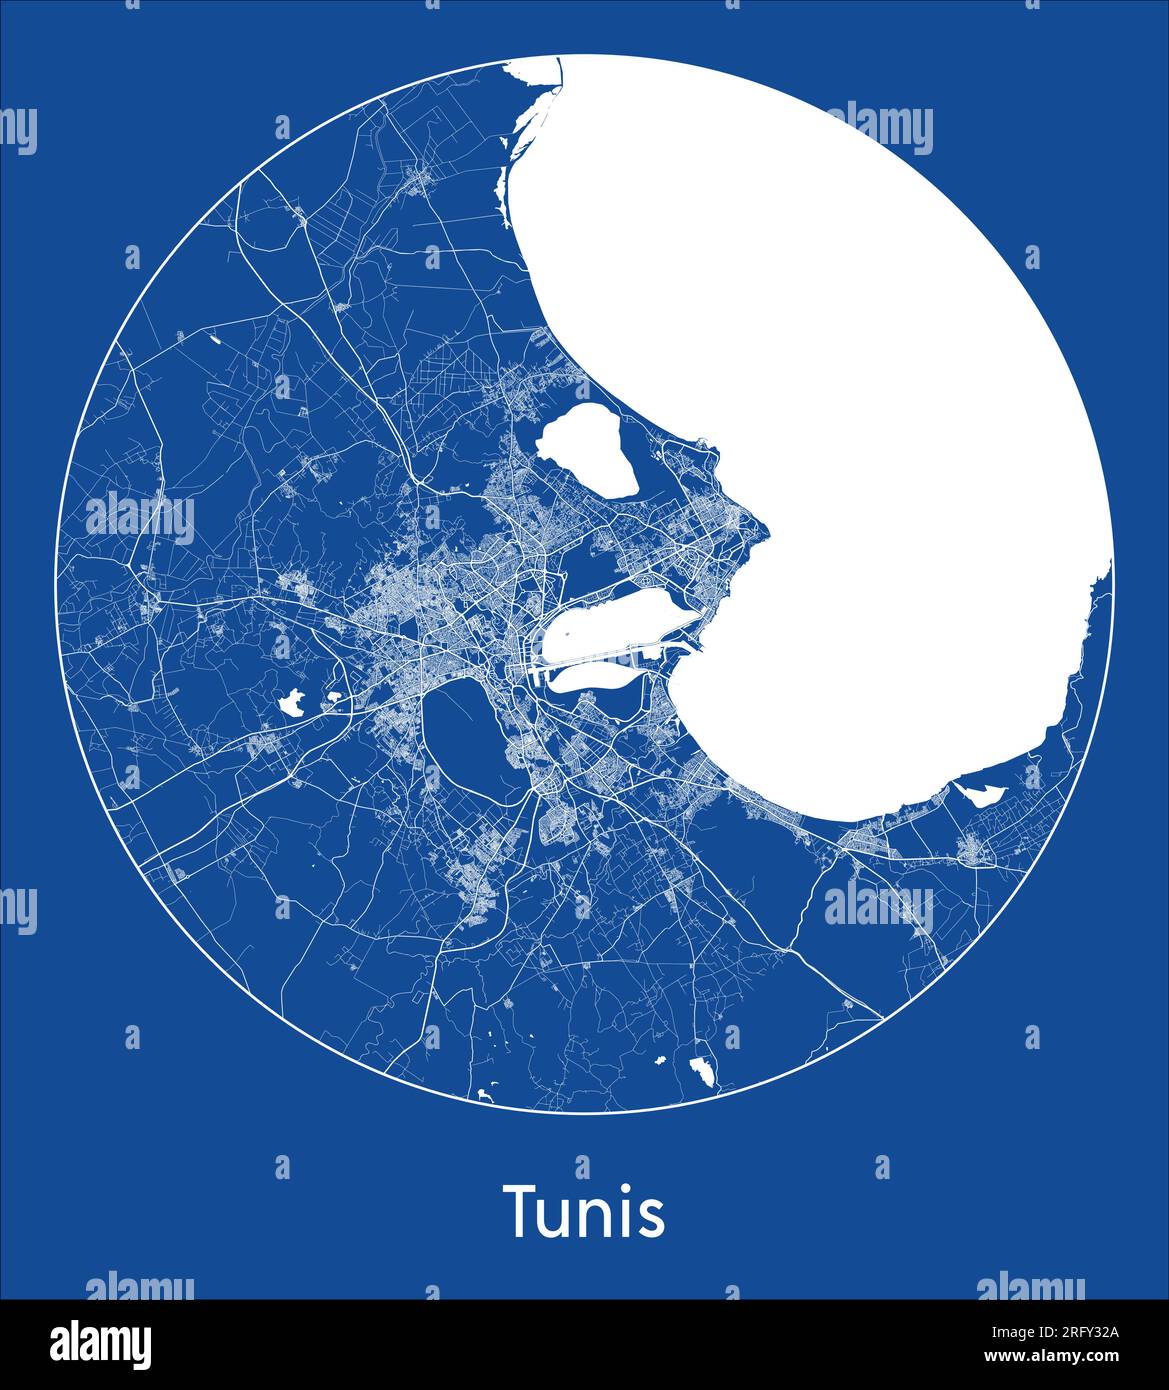 Plan de la ville Tunis Tunisie Afrique bleu imprimer rond cercle illustration vectorielle Illustration de Vecteur